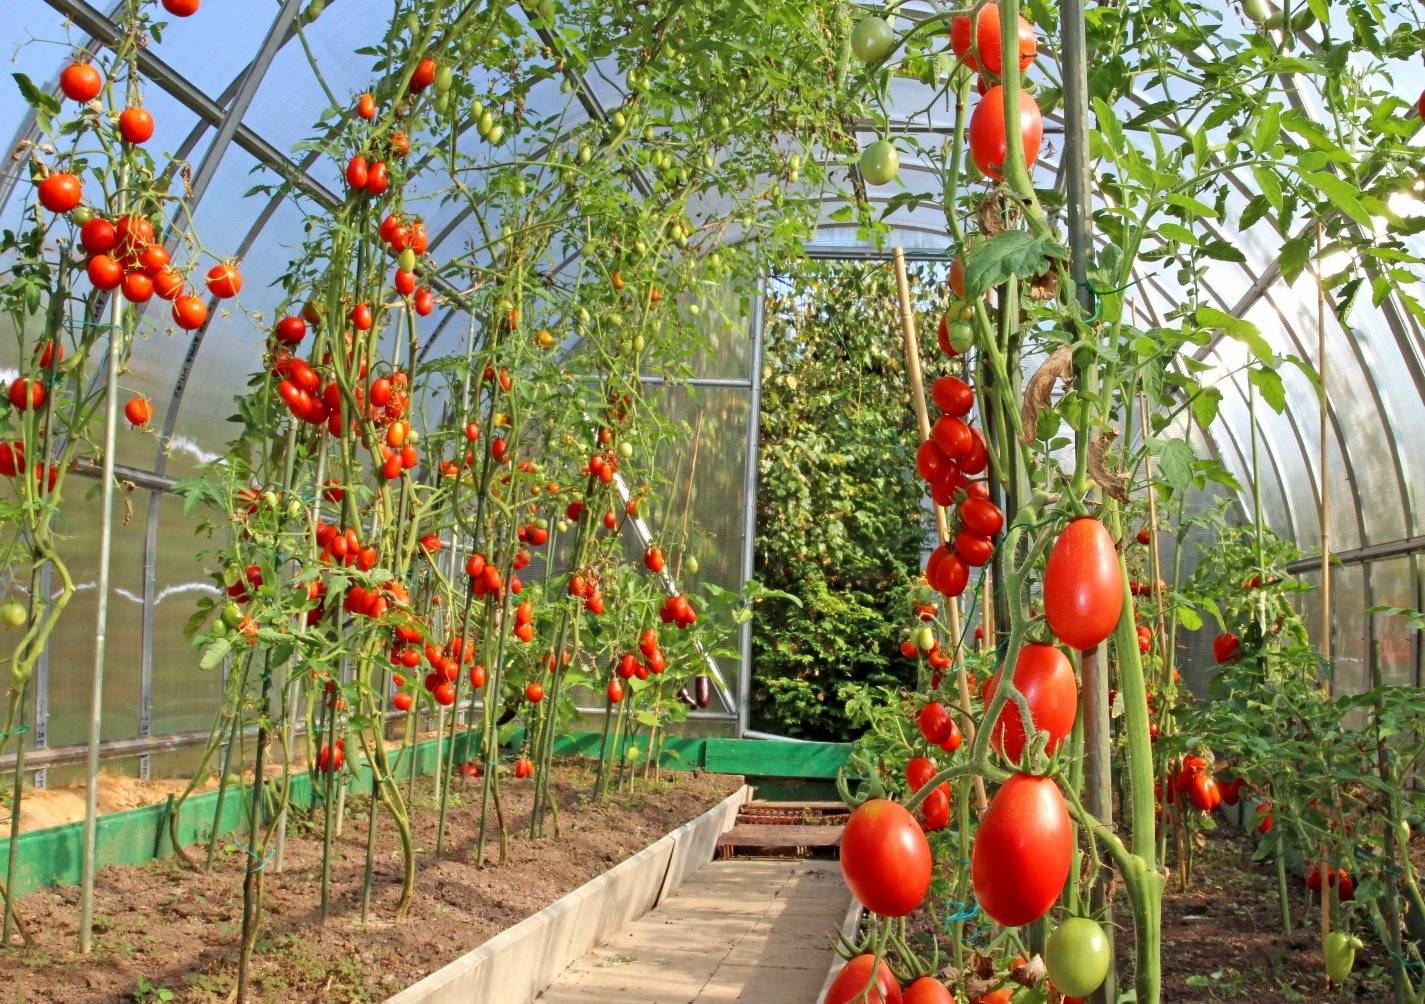 Самые высокоурожайные сорта томатов: фото, названия и описания (каталог)